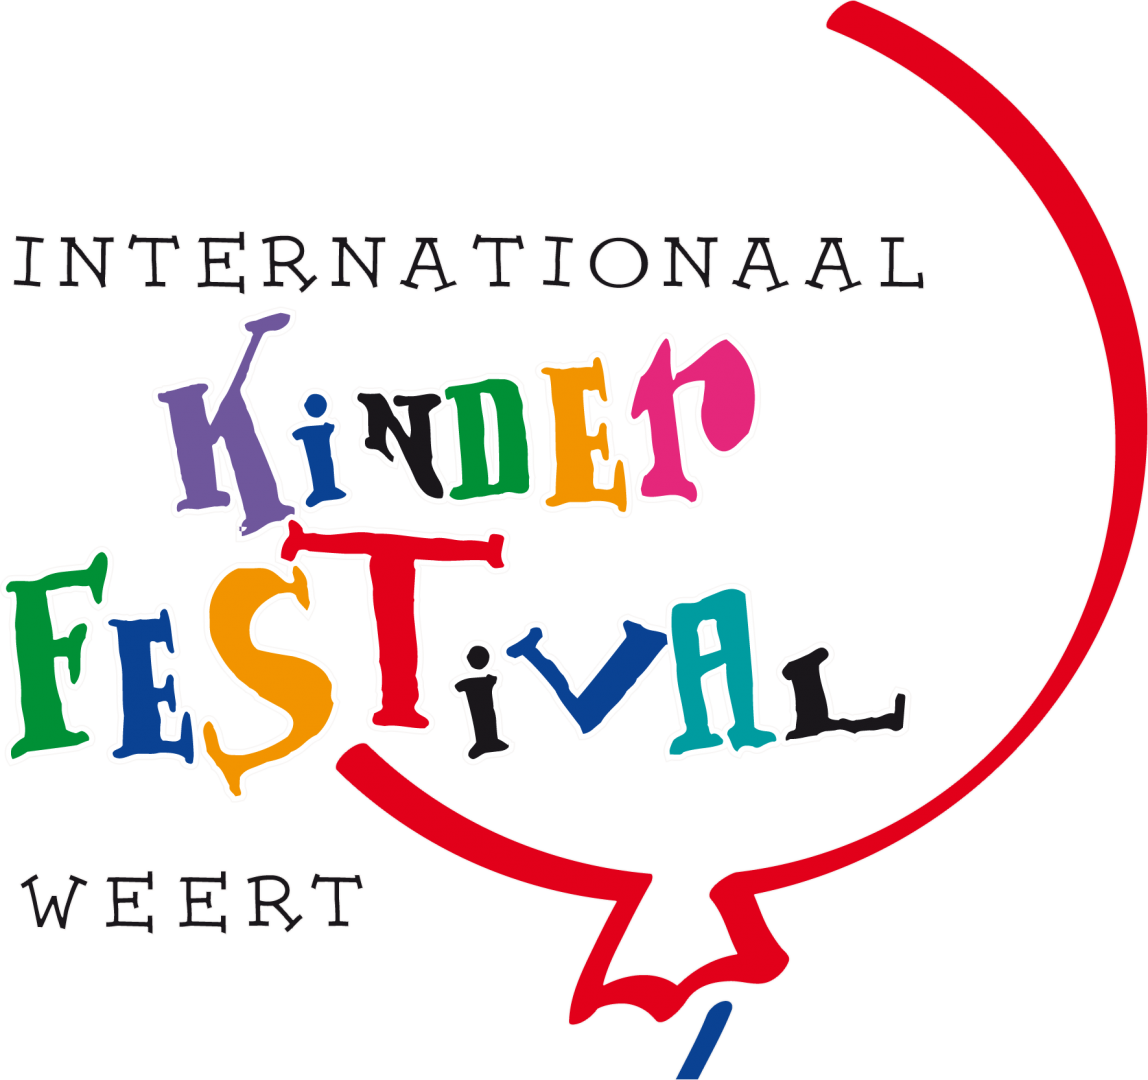 Internationaal Kinderfestival